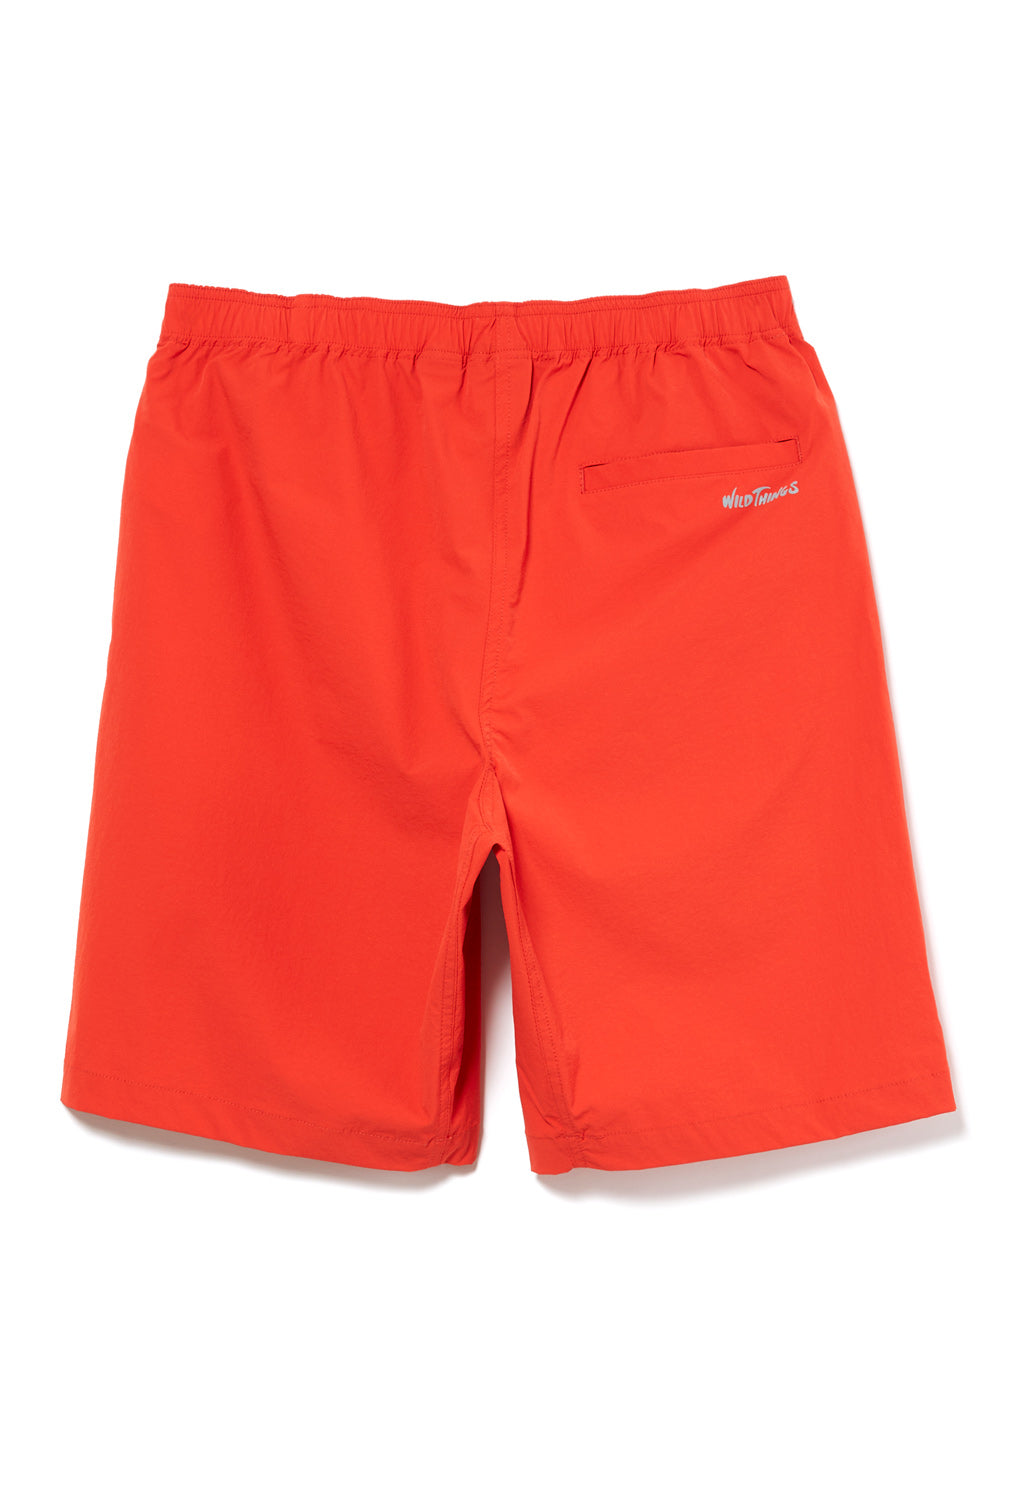 Wild Things Men's Base Shorts - Orange – Outsiders Store UK